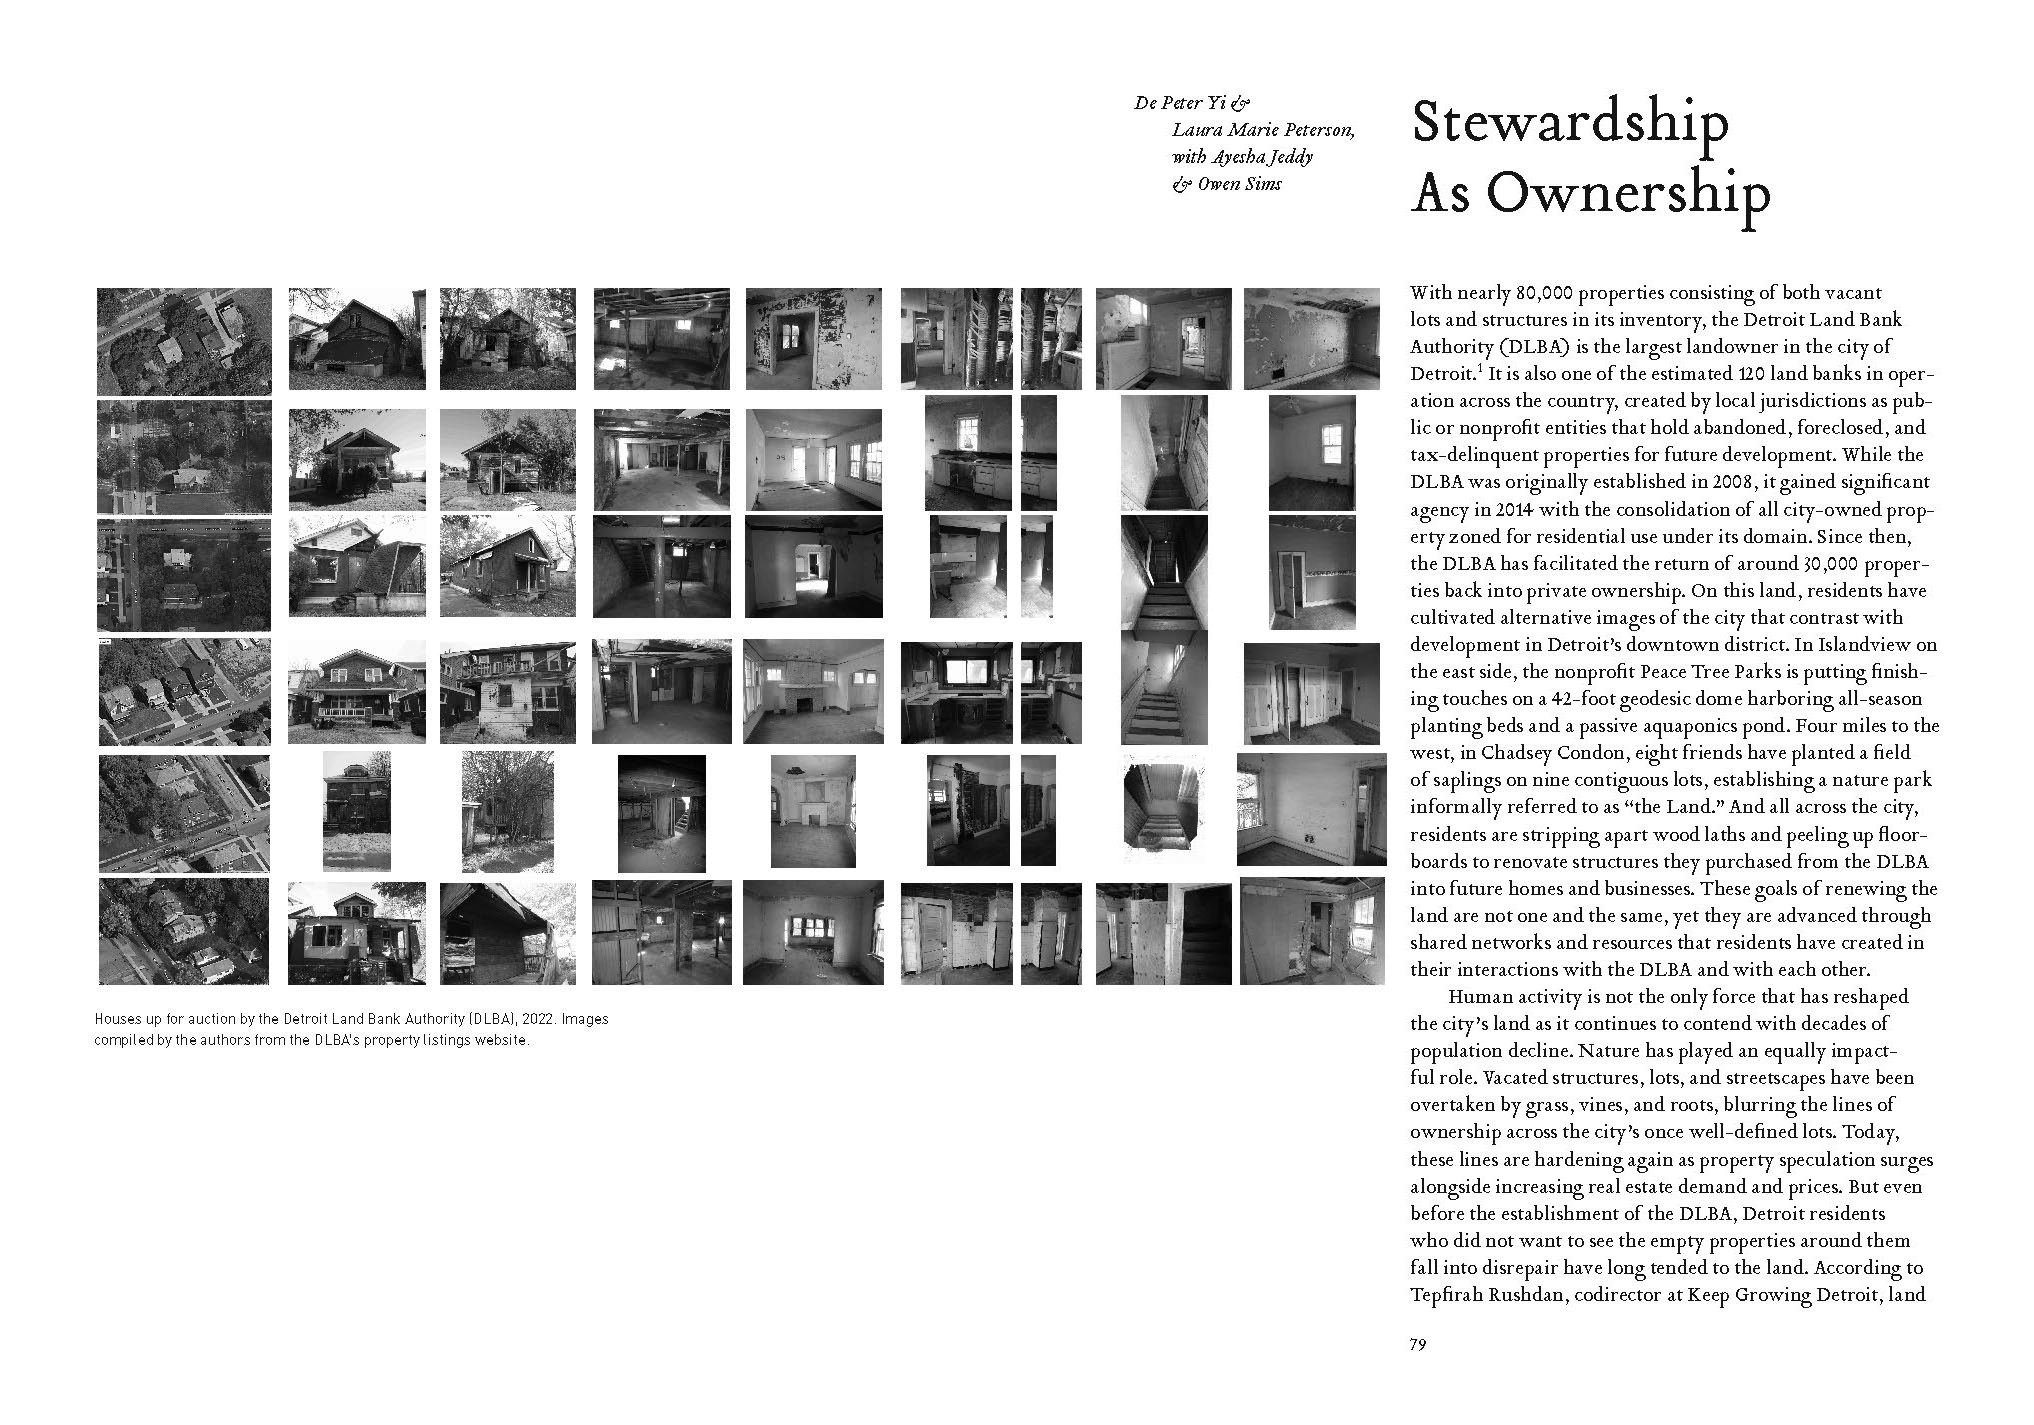 Stewardship as Ownership - Log 54 